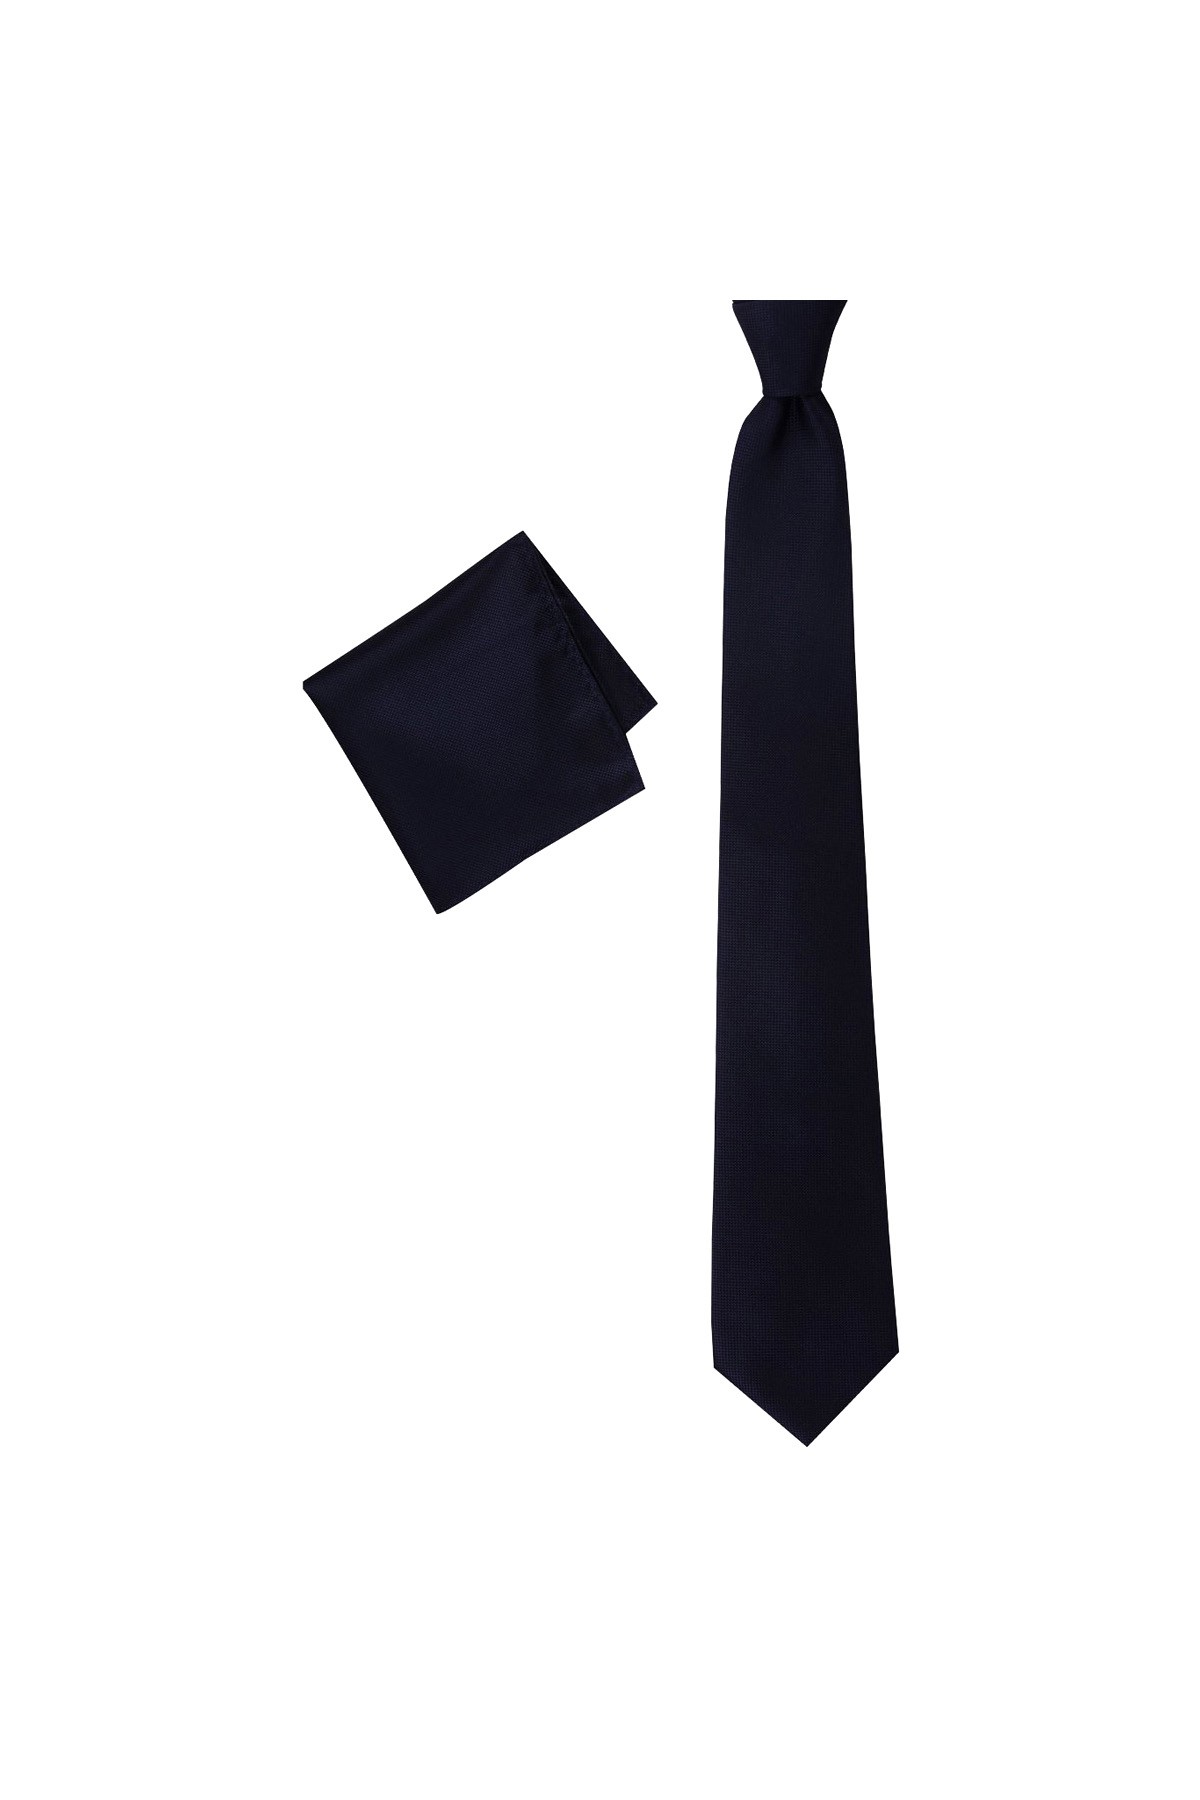 Düz renkli 8 cm genişliğinde mendilli kravat - Lacivert